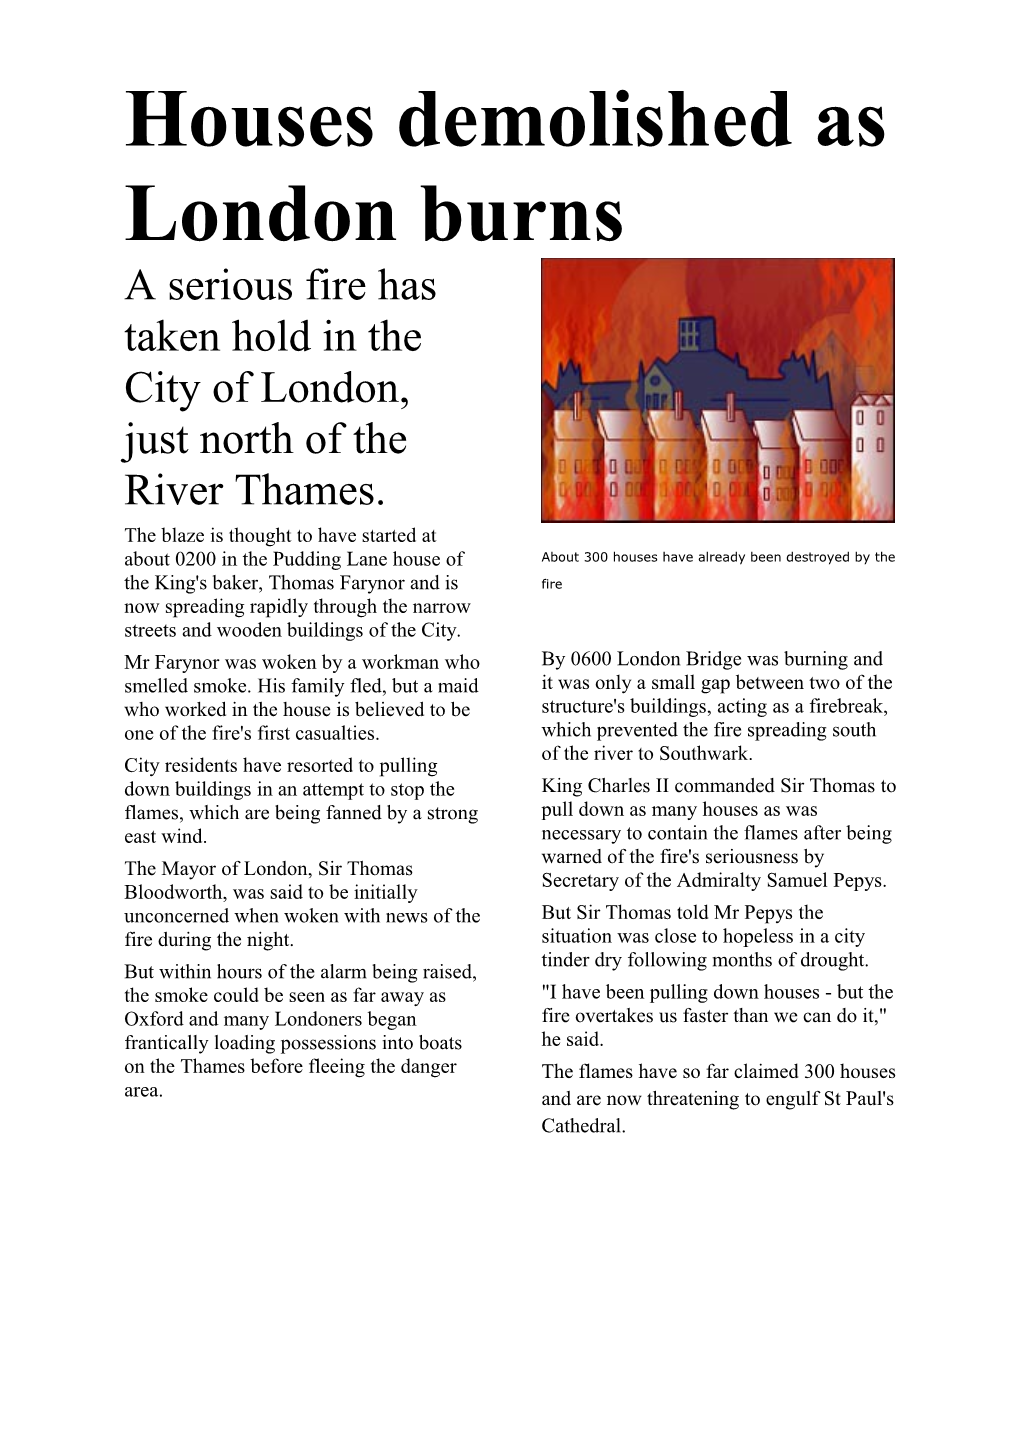 Houses Demolished As London Burns